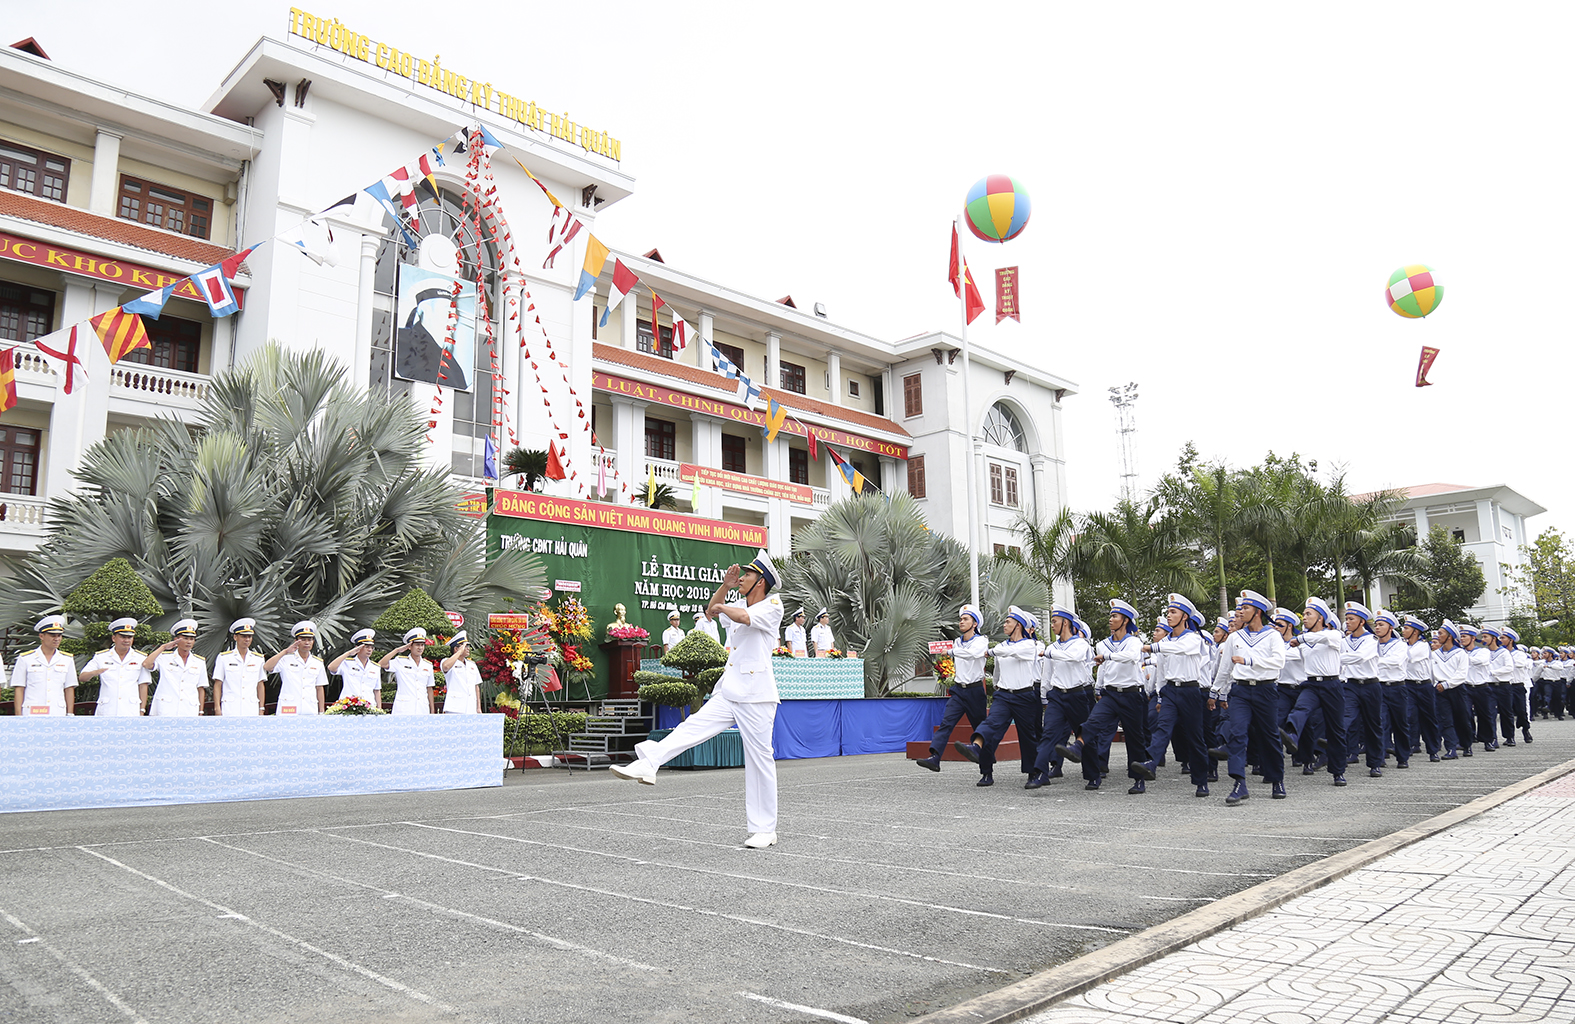 Trường Cao đẳng kỹ thuật Hải quân: Khai giảng năm học 2019-2020 - Báo Hải  Quân Việt Nam